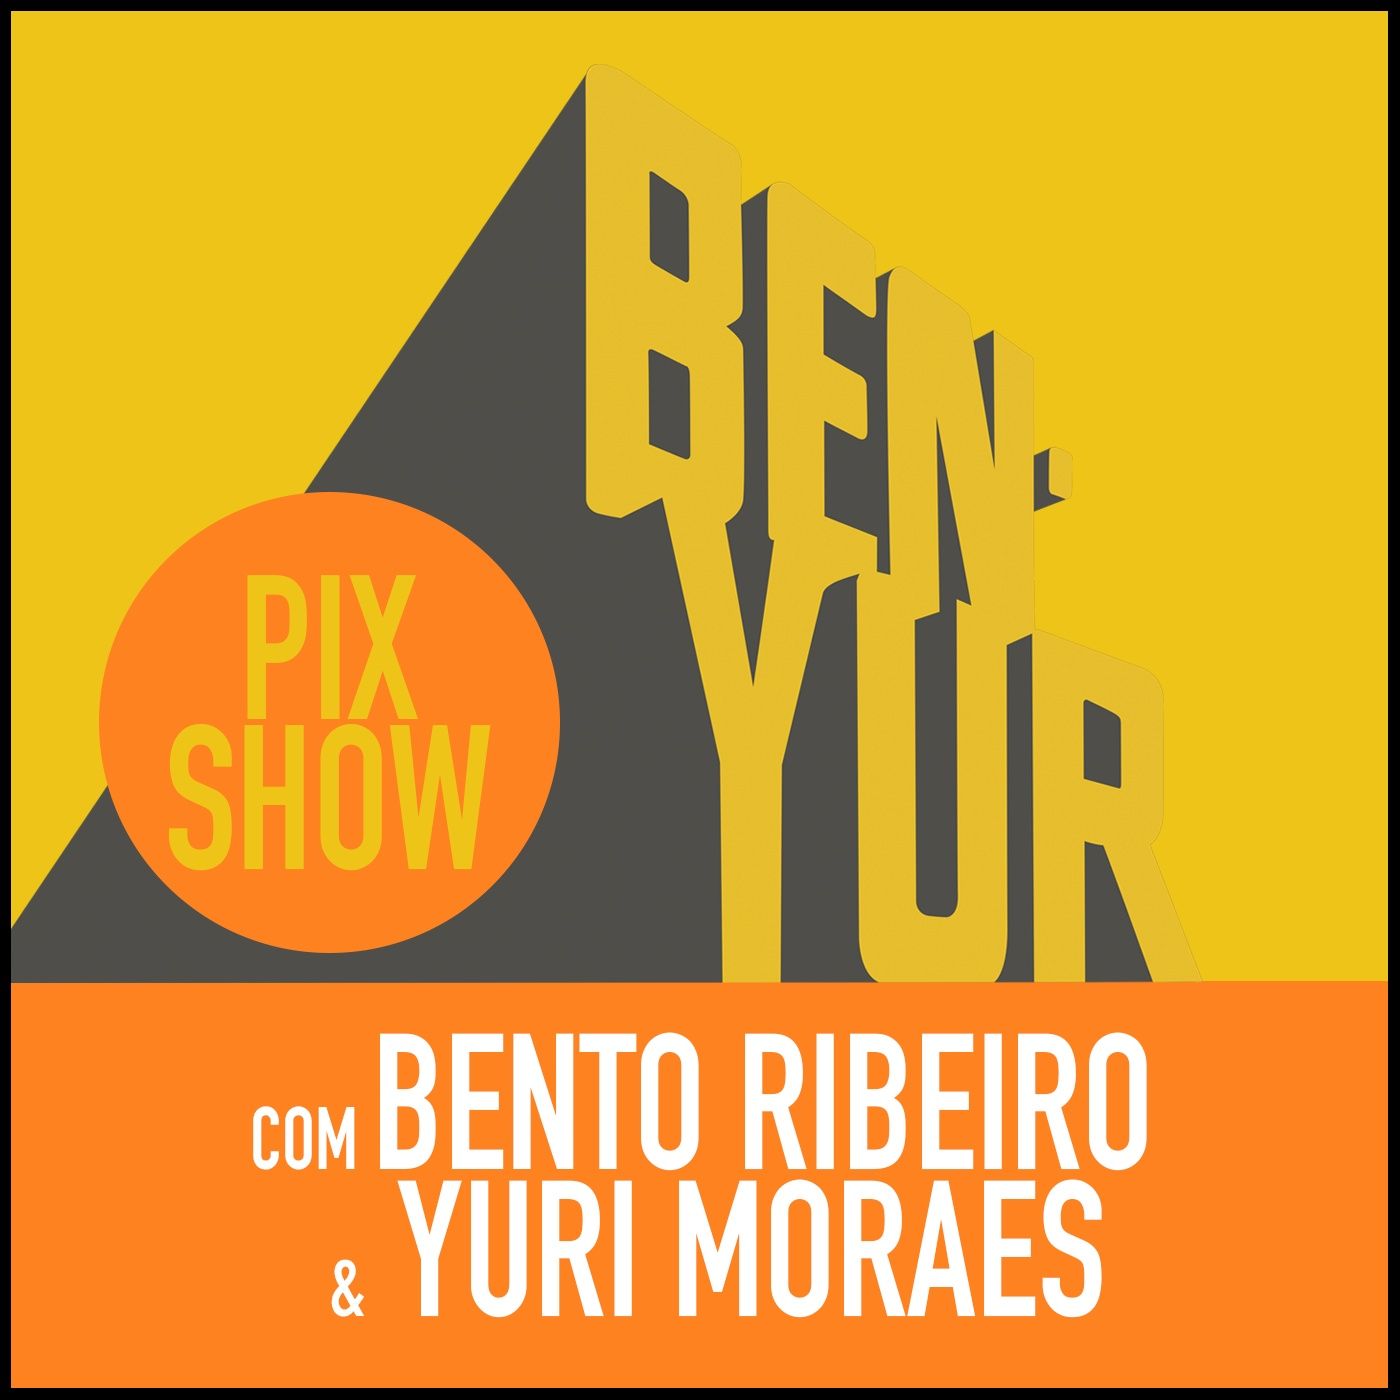 BEN-YUR PIXSHOW #092 com Bento Ribeiro & Yuri Moraes